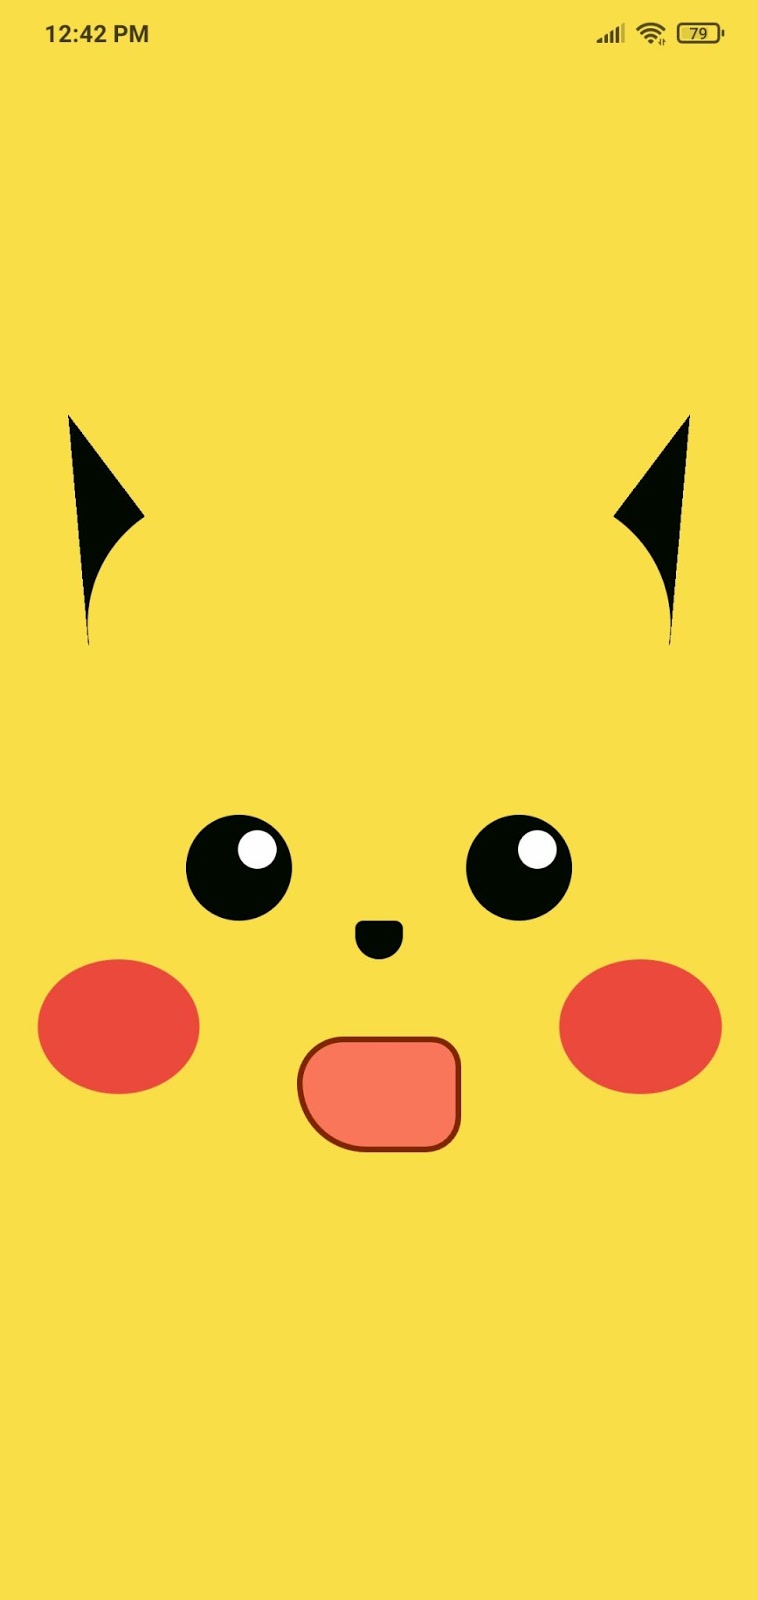 Tela da aplicação contendo um fundo amarelo e elementos de um rosto que lembram o personagem Pikachu, porém, com os brilhos dos olhos na direita